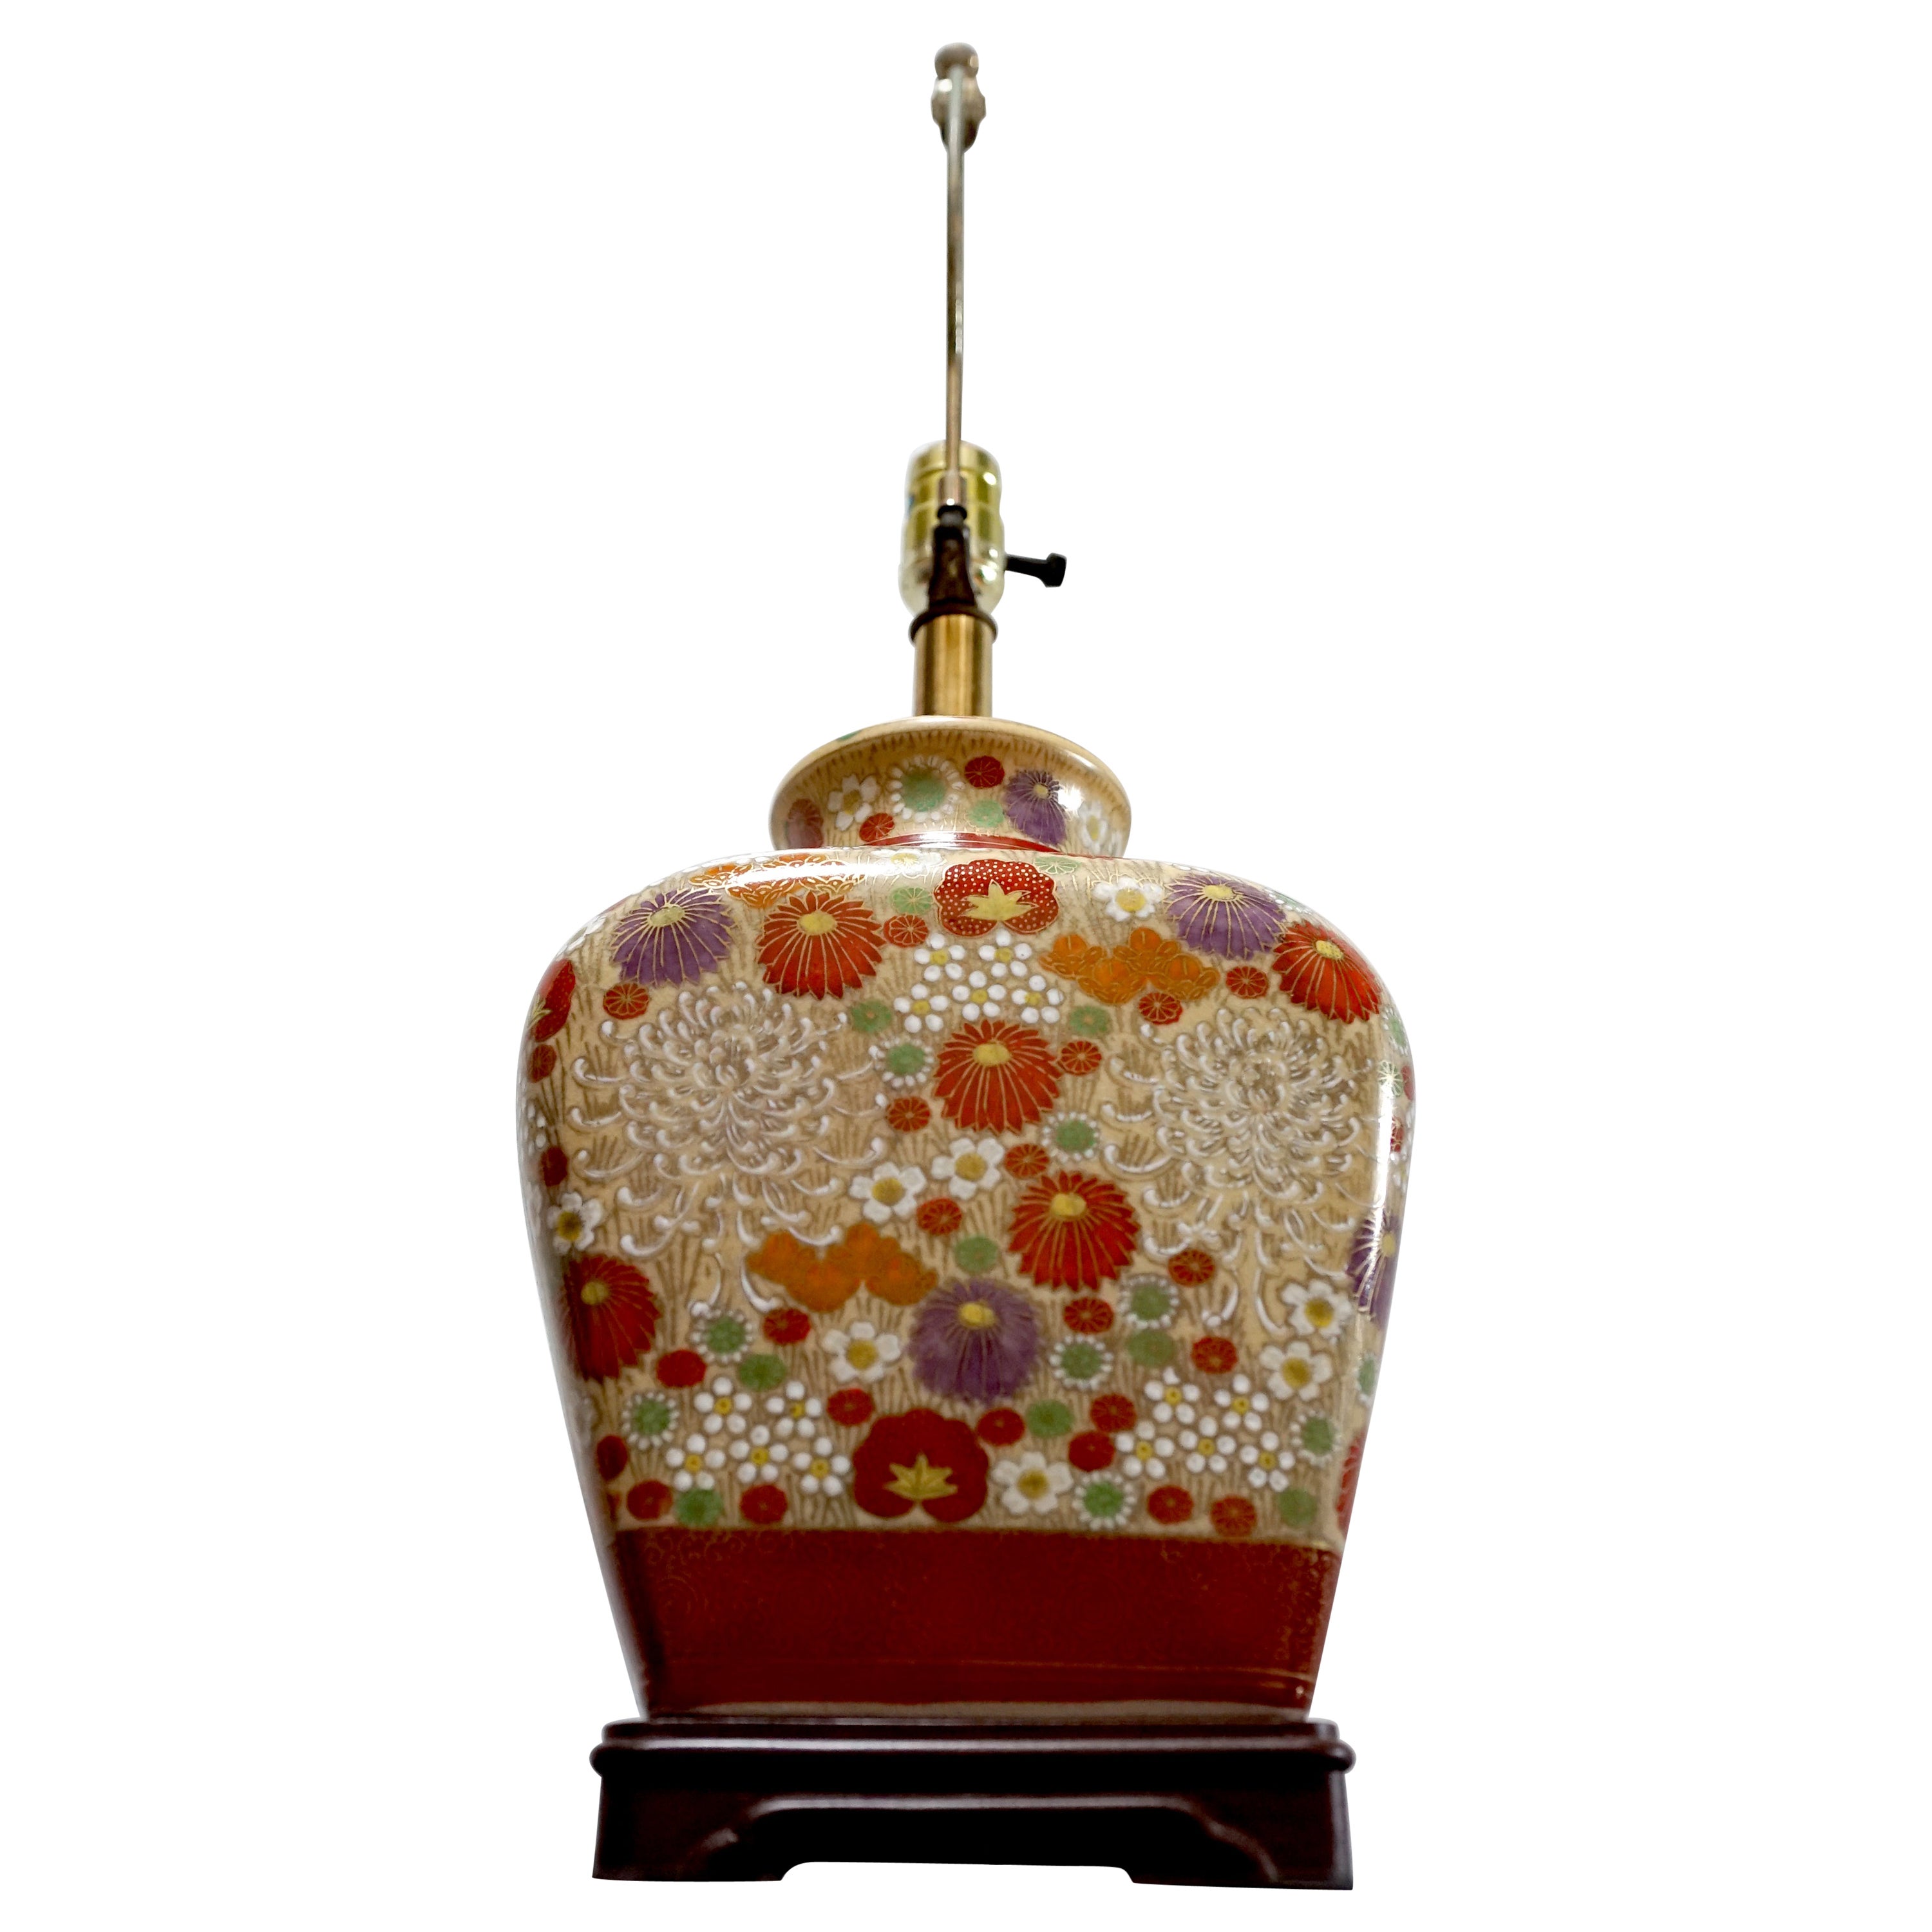 Lampe de table dorée d'influence asiatique avec profusion de fleurs, base en bois de rose